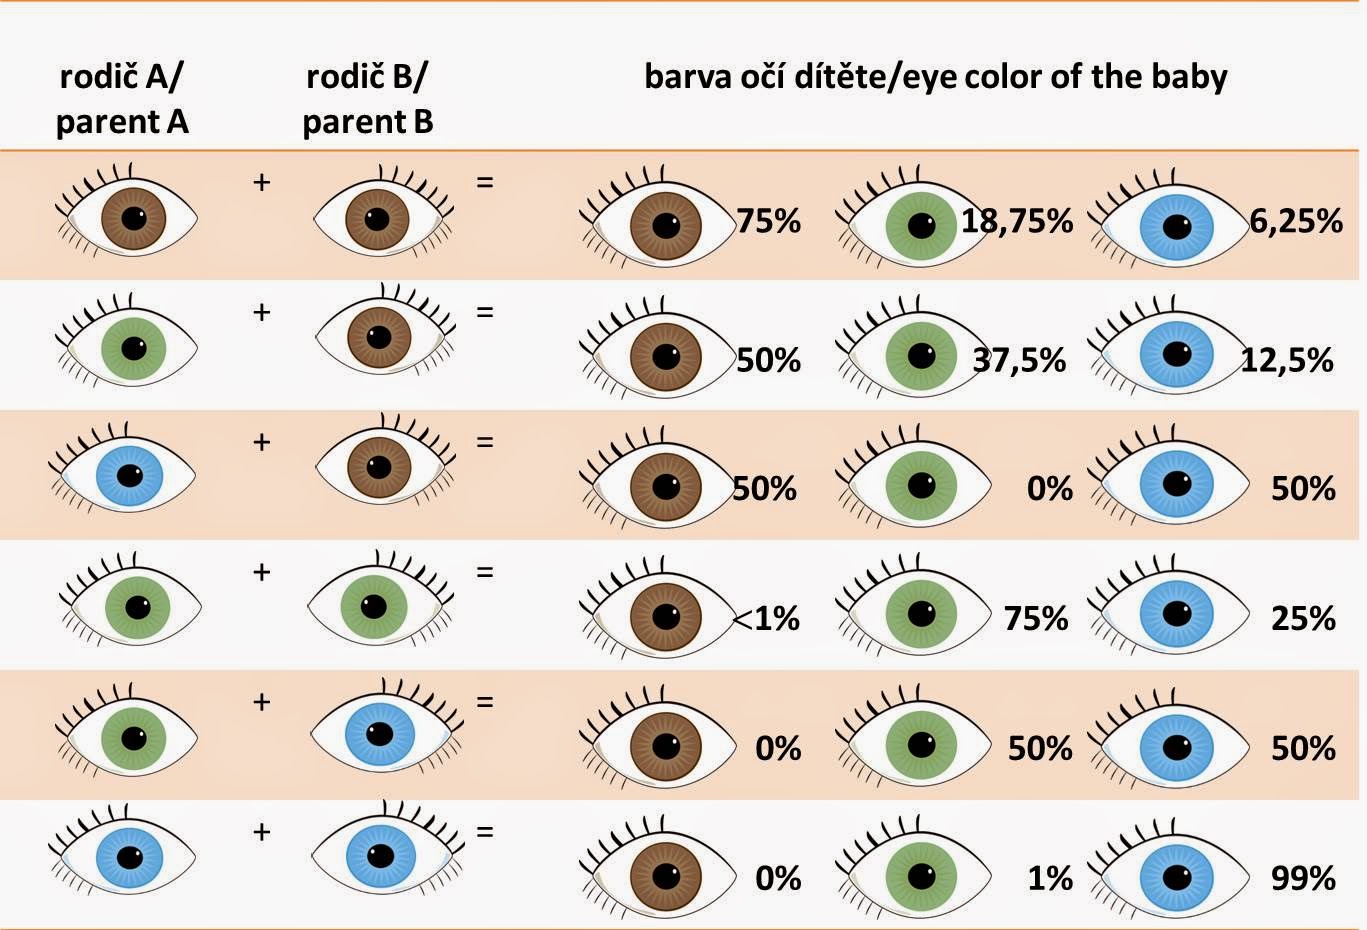 Какой цвет глаз может быть у детей с черными волосами